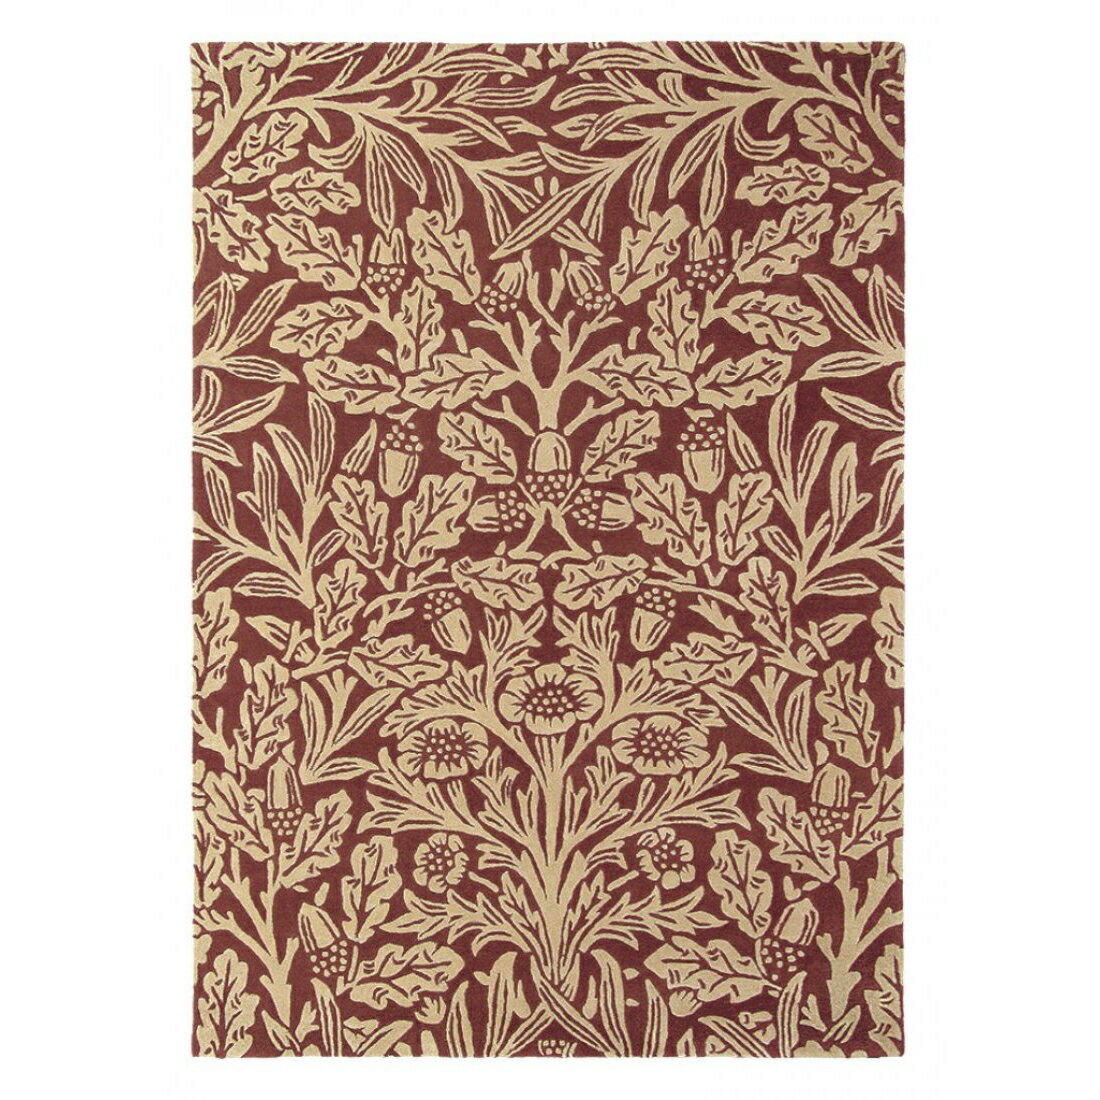 英國Morris&Co羊毛地毯 OAK 27900  古典圖騰 經典優雅